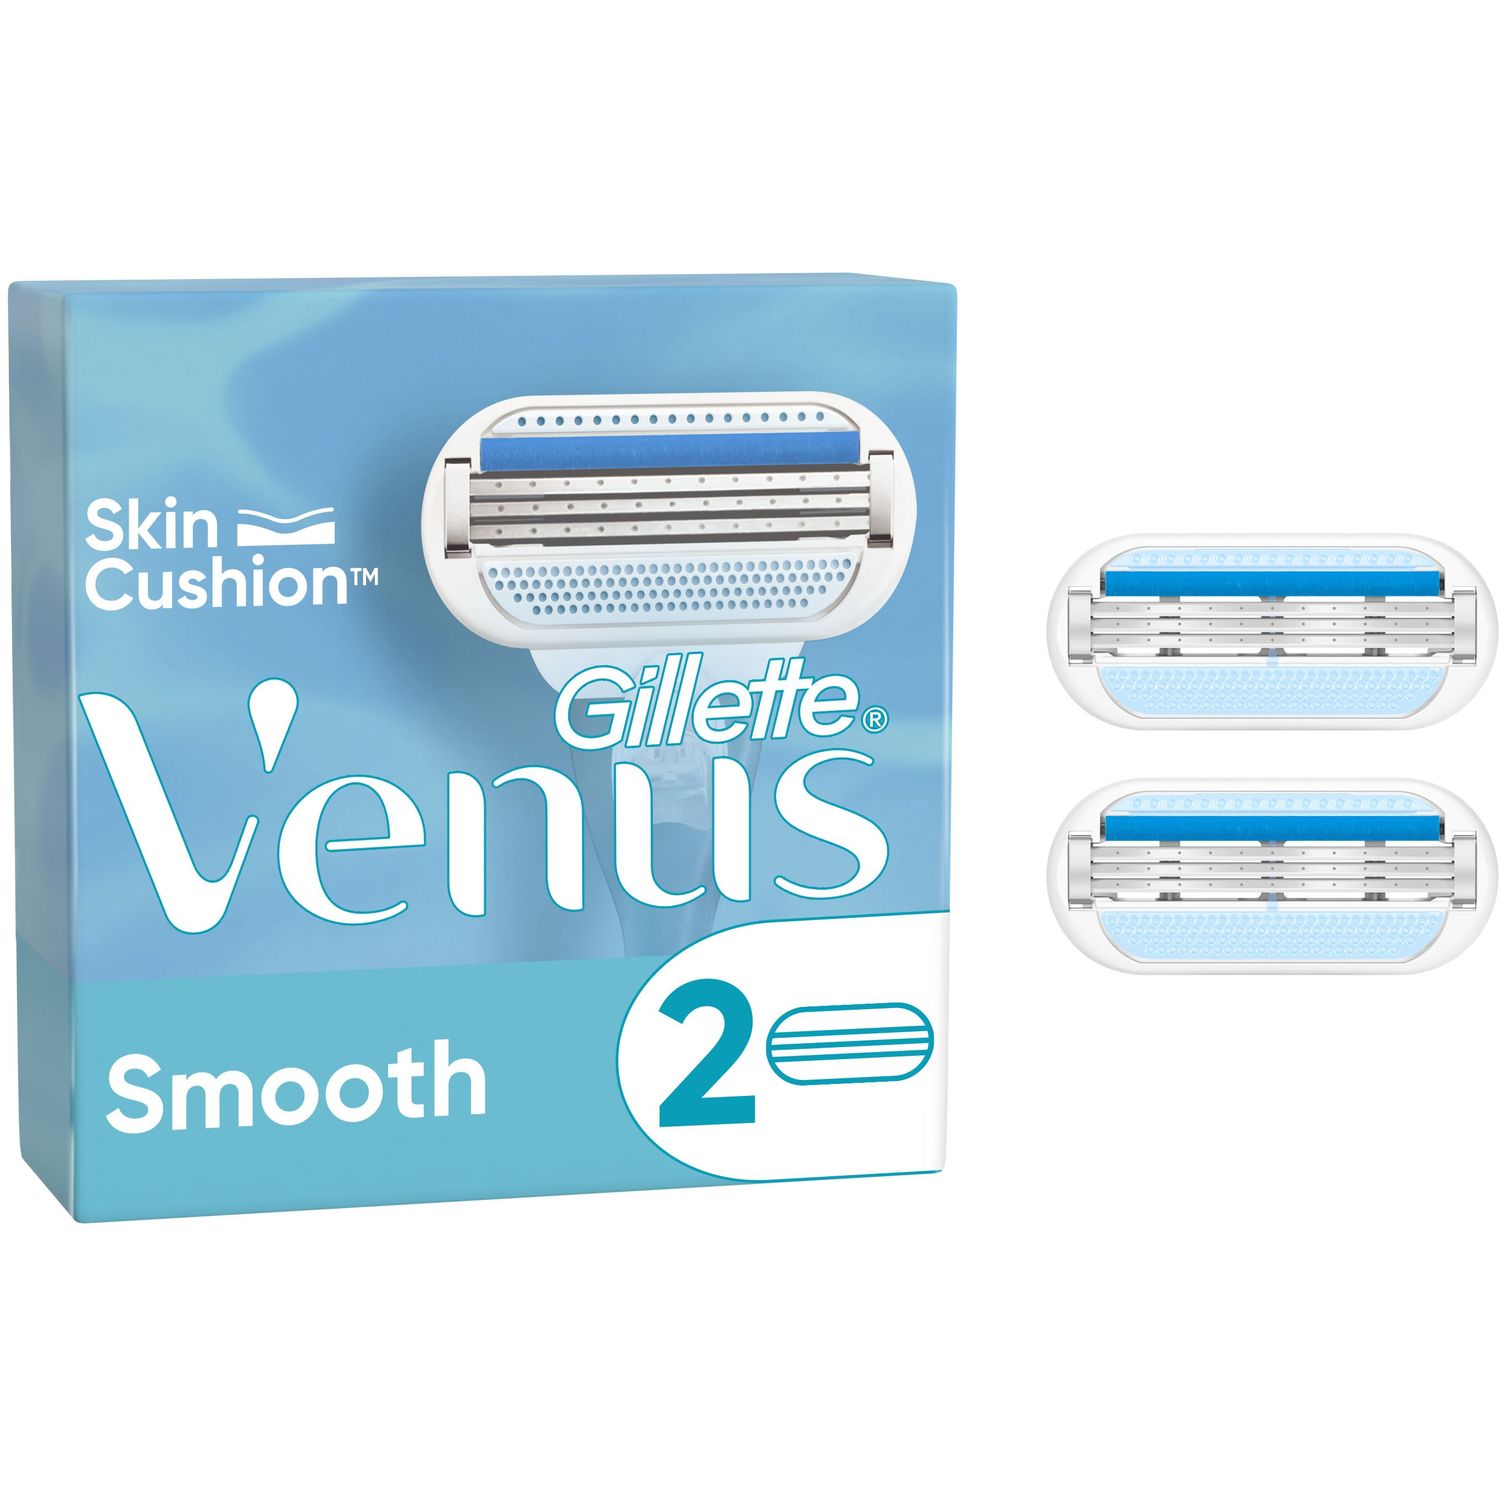 Сменные картриджи для бритья Gillette Venus Smooth, 2 шт. - фото 1